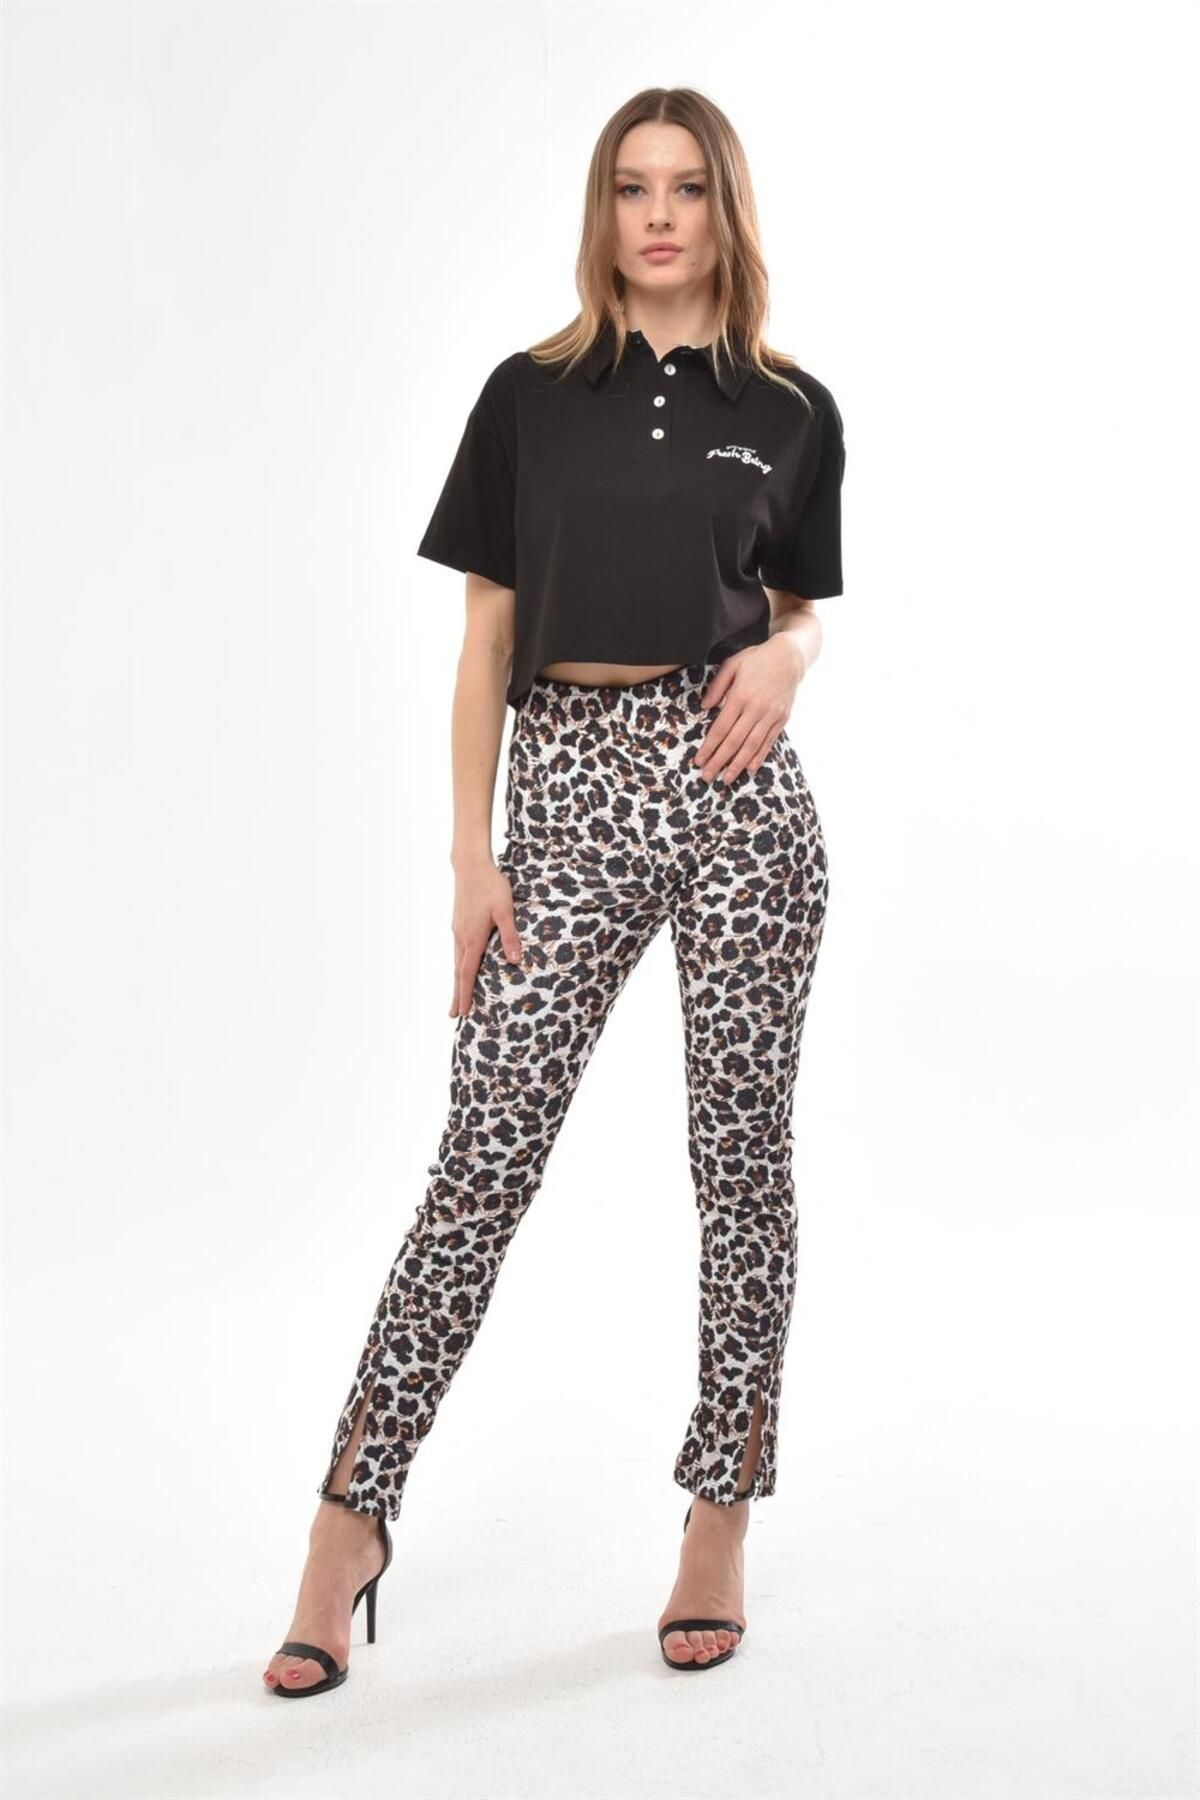 TF The Fancy For You Fancy Kadın Yırtmaç Detaylı %100 Polyester Desenli Yüksek Bel Pantolon